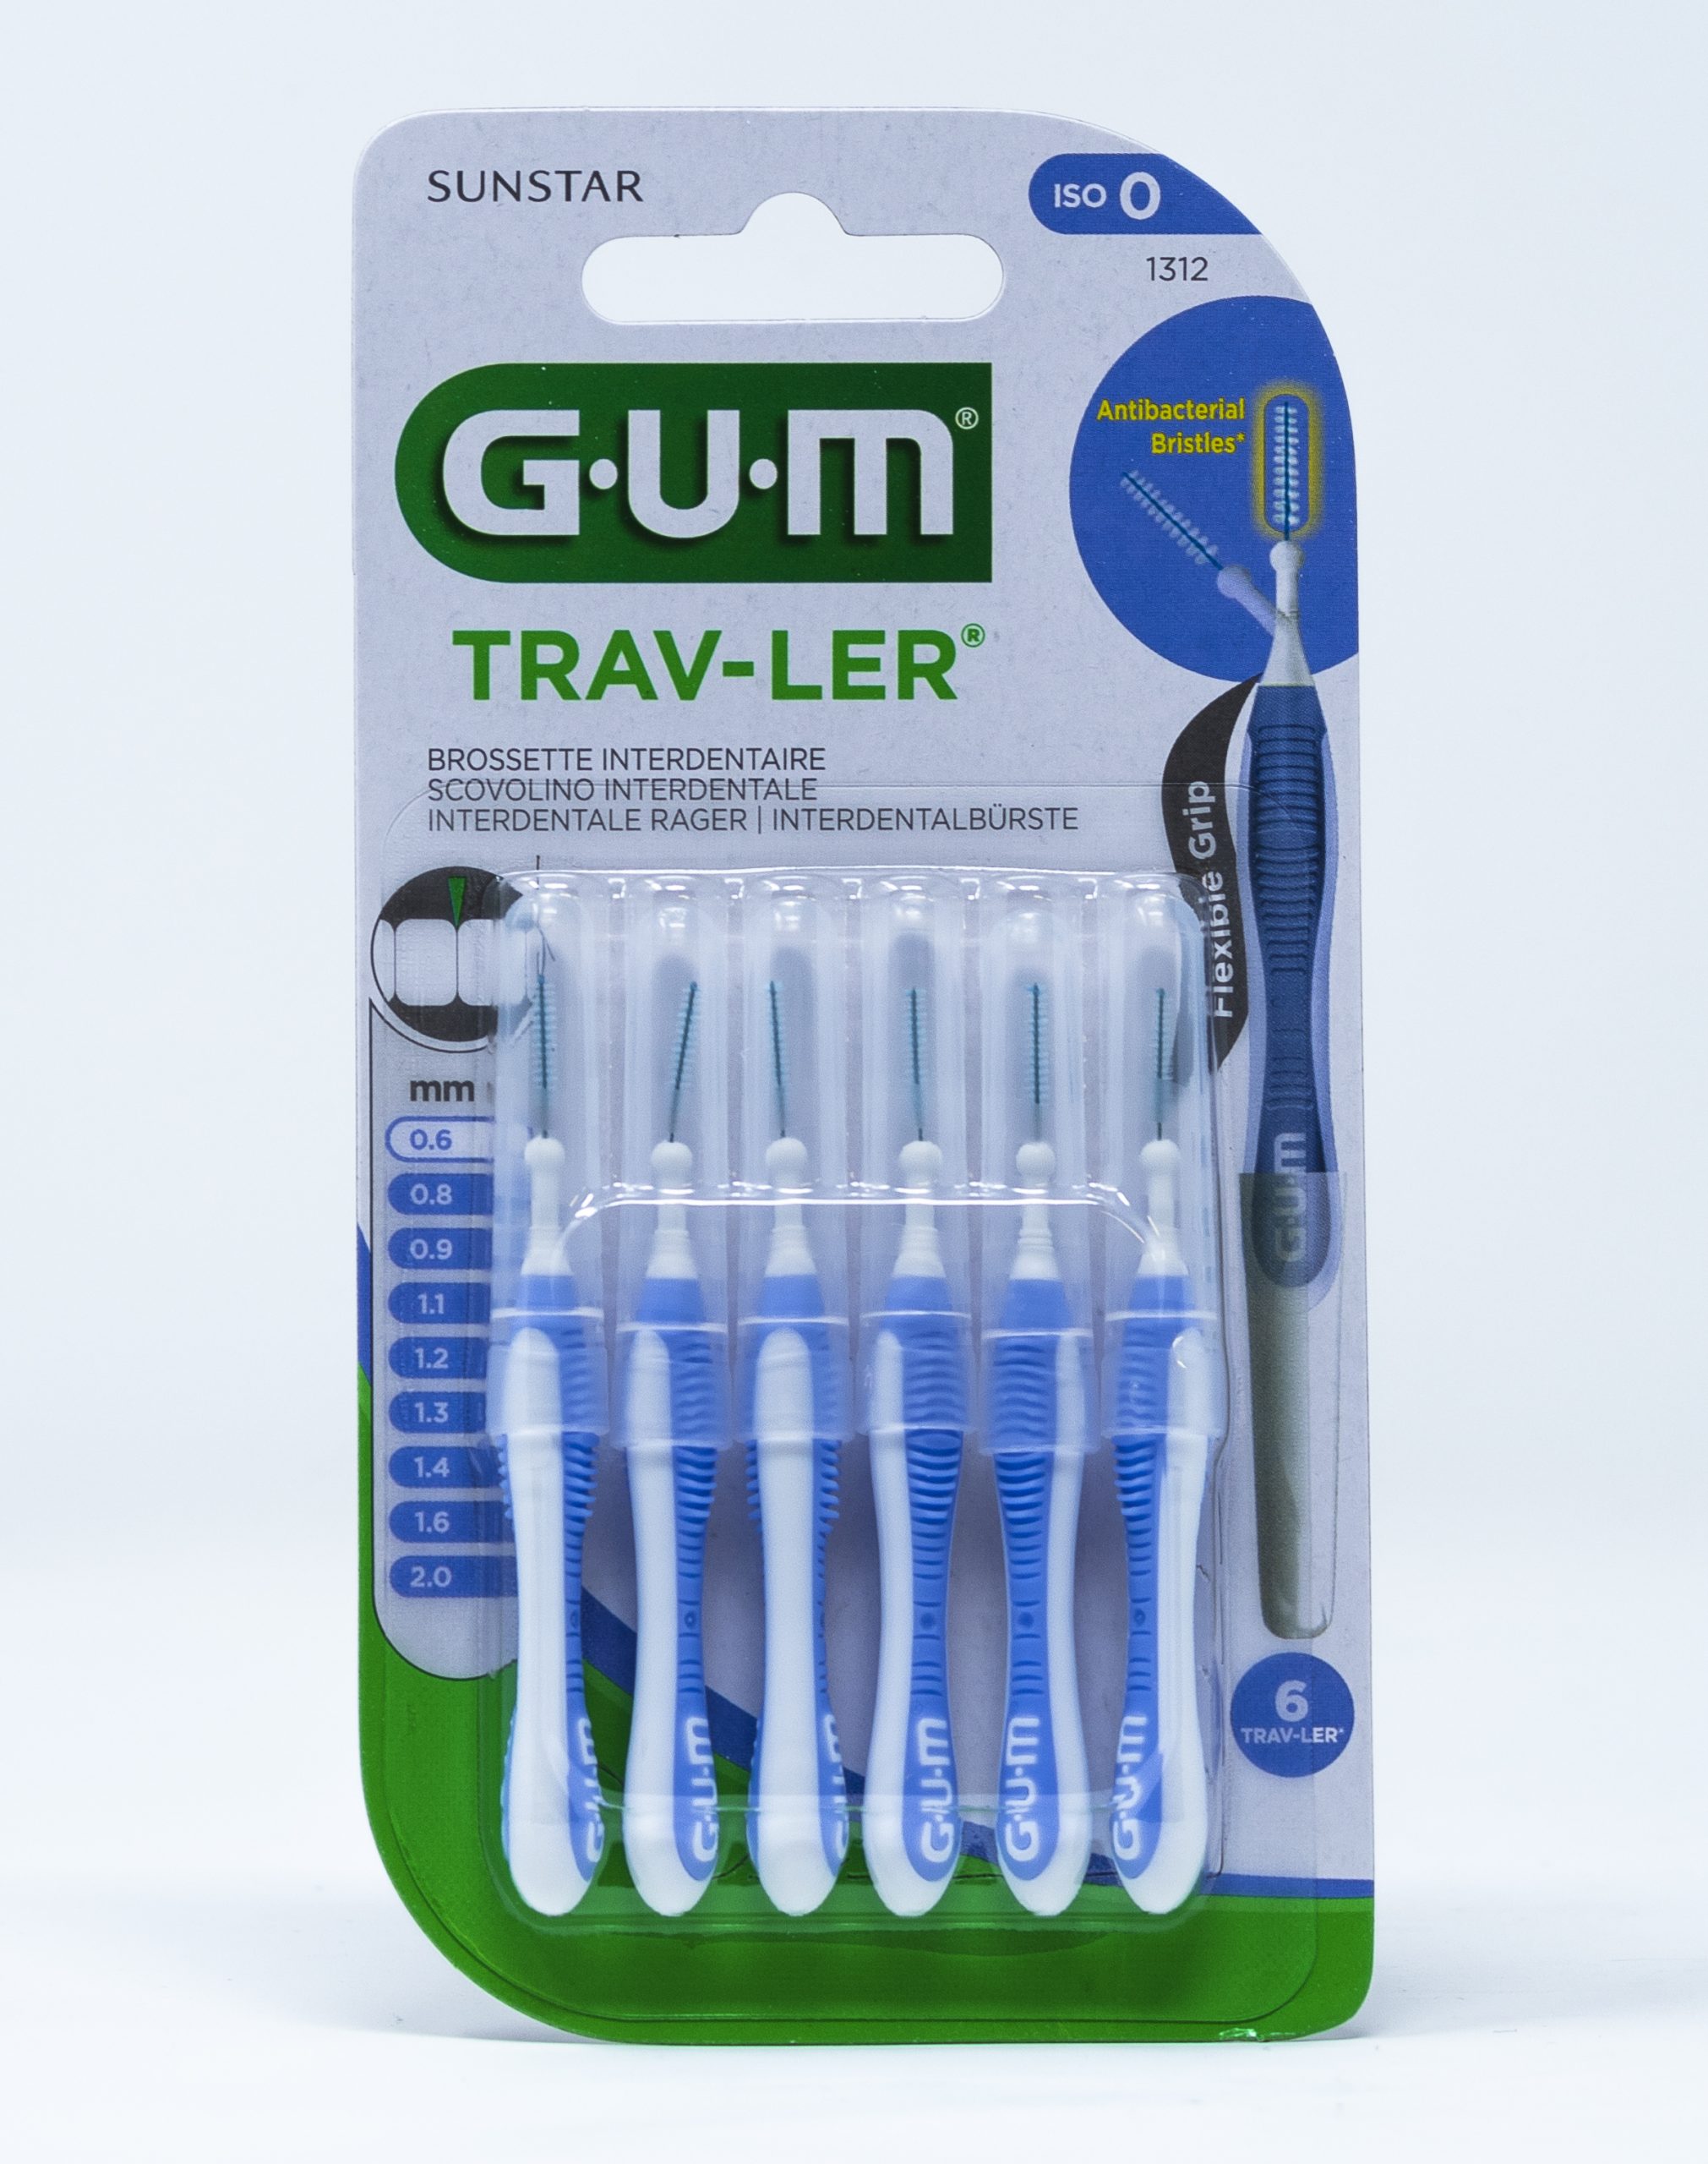 Gum Scovolino Trav-Ler ISO 0 – 0,6 mm  1312 - Sorrisodeciso: il filo  diretto col tuo dentista